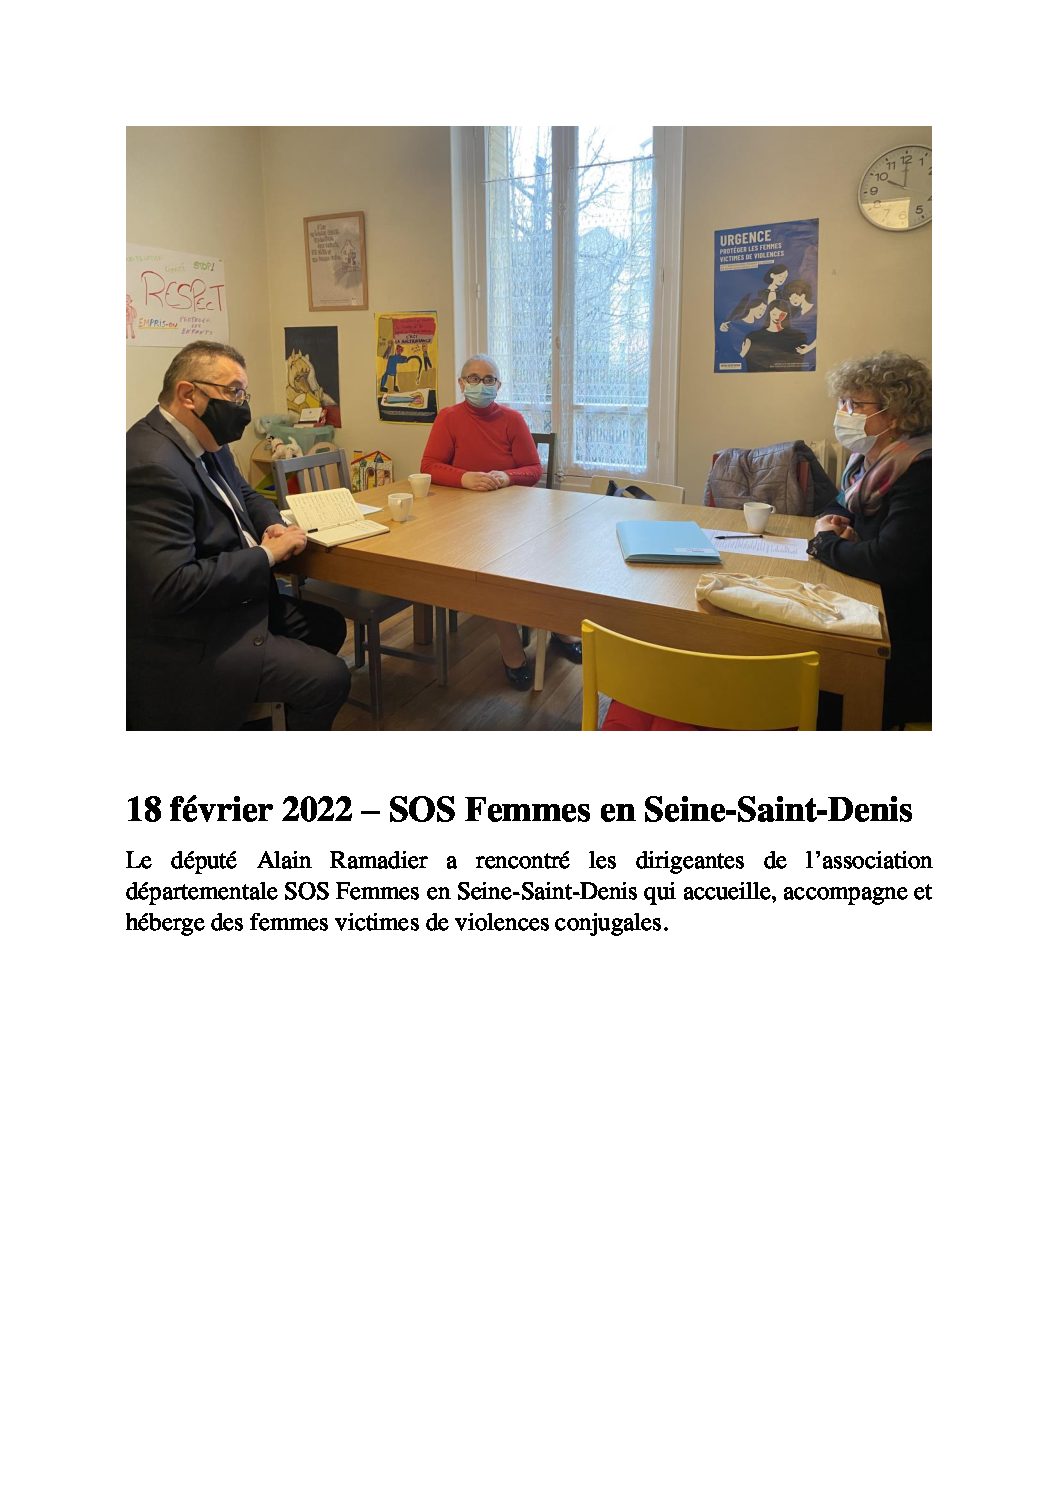 18 février 2022 : Rencontre avec le député Alain Ramadier